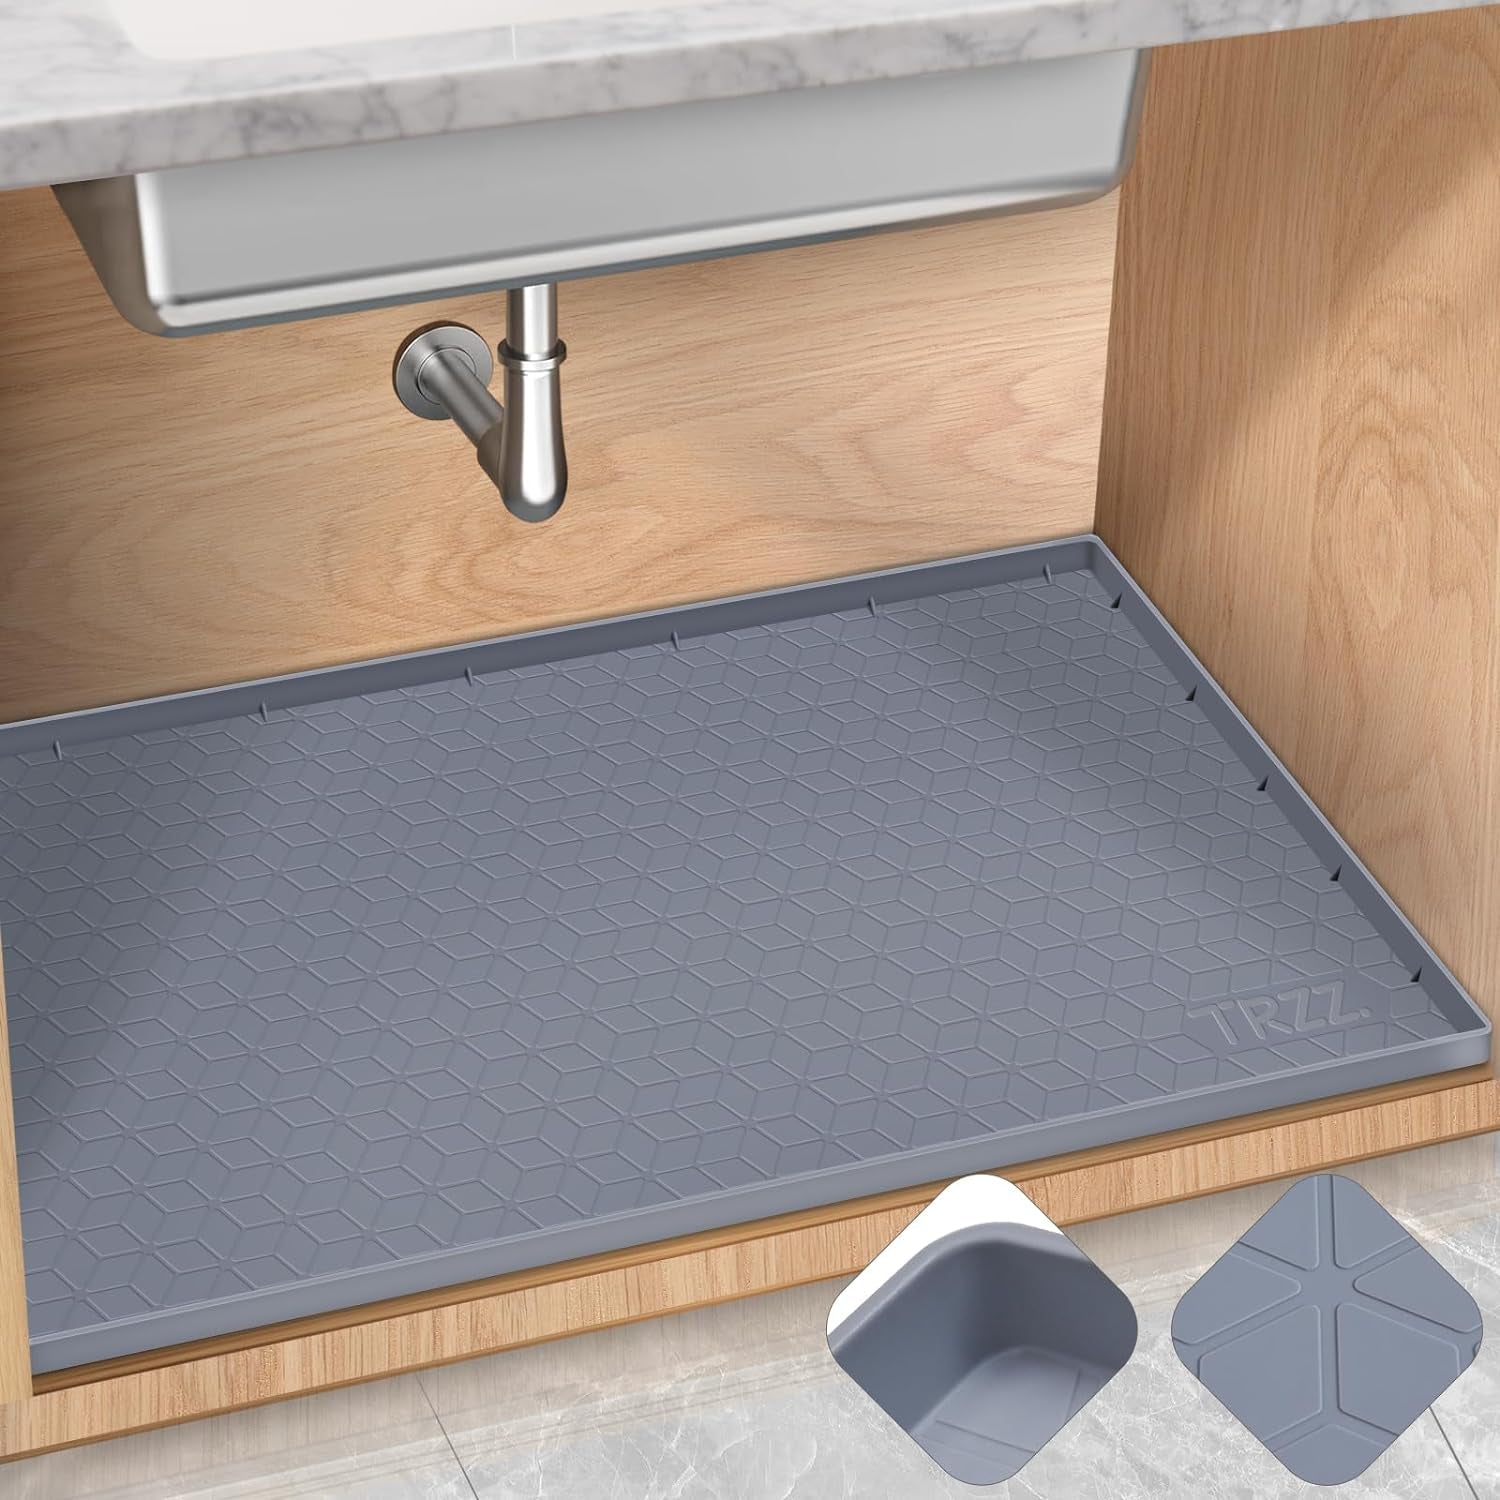 Under Sink Waterproof Silicon Mat & Shelf Liner Organizer